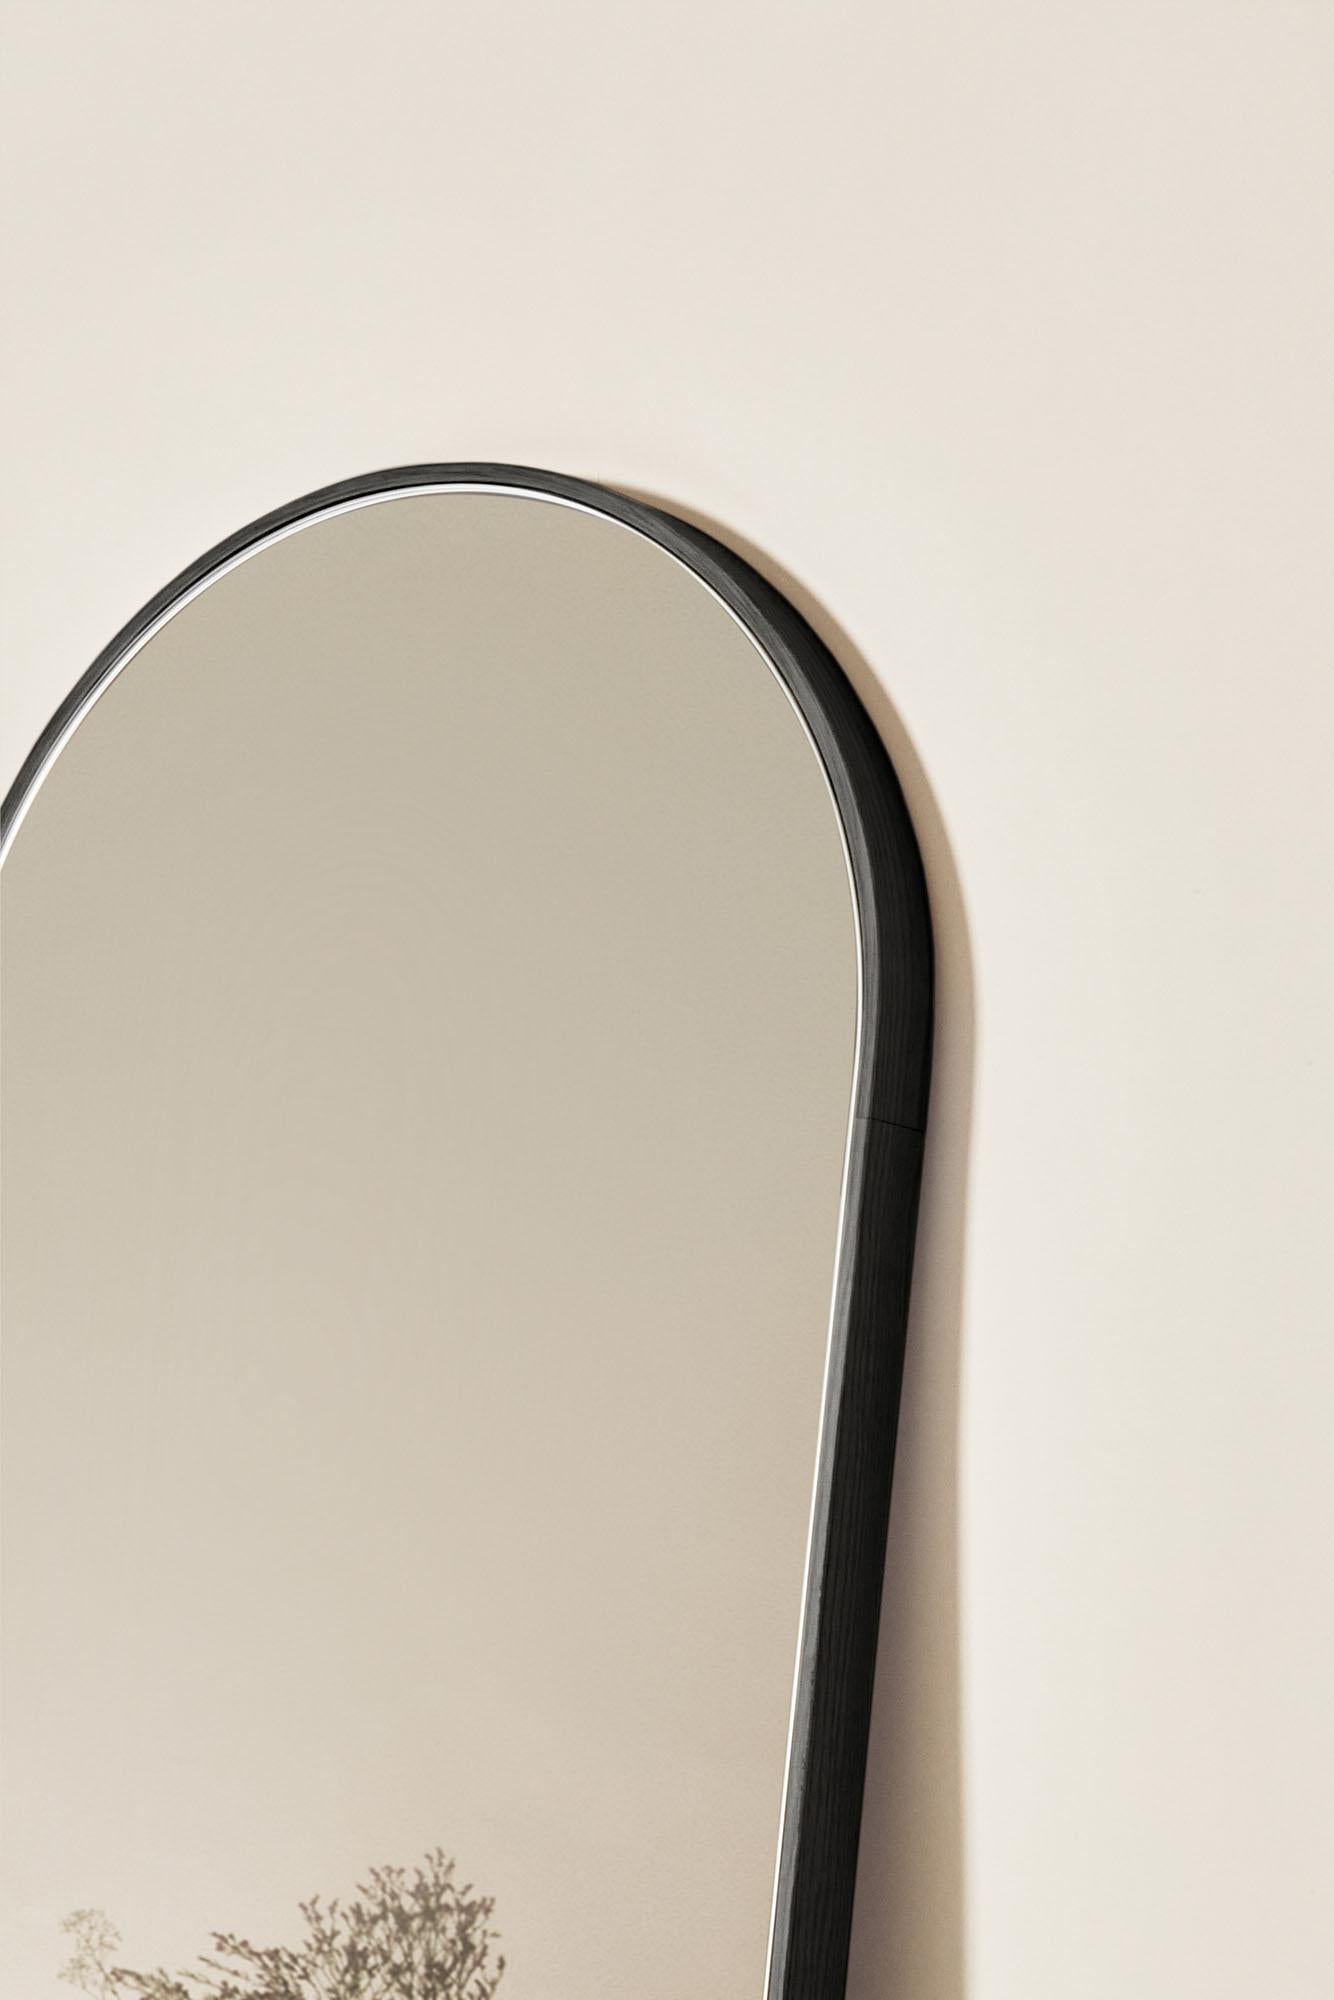 Italian Tutto Sesto Solid Wood Oval Mirror, Ash in Black Finish, Contemporary For Sale